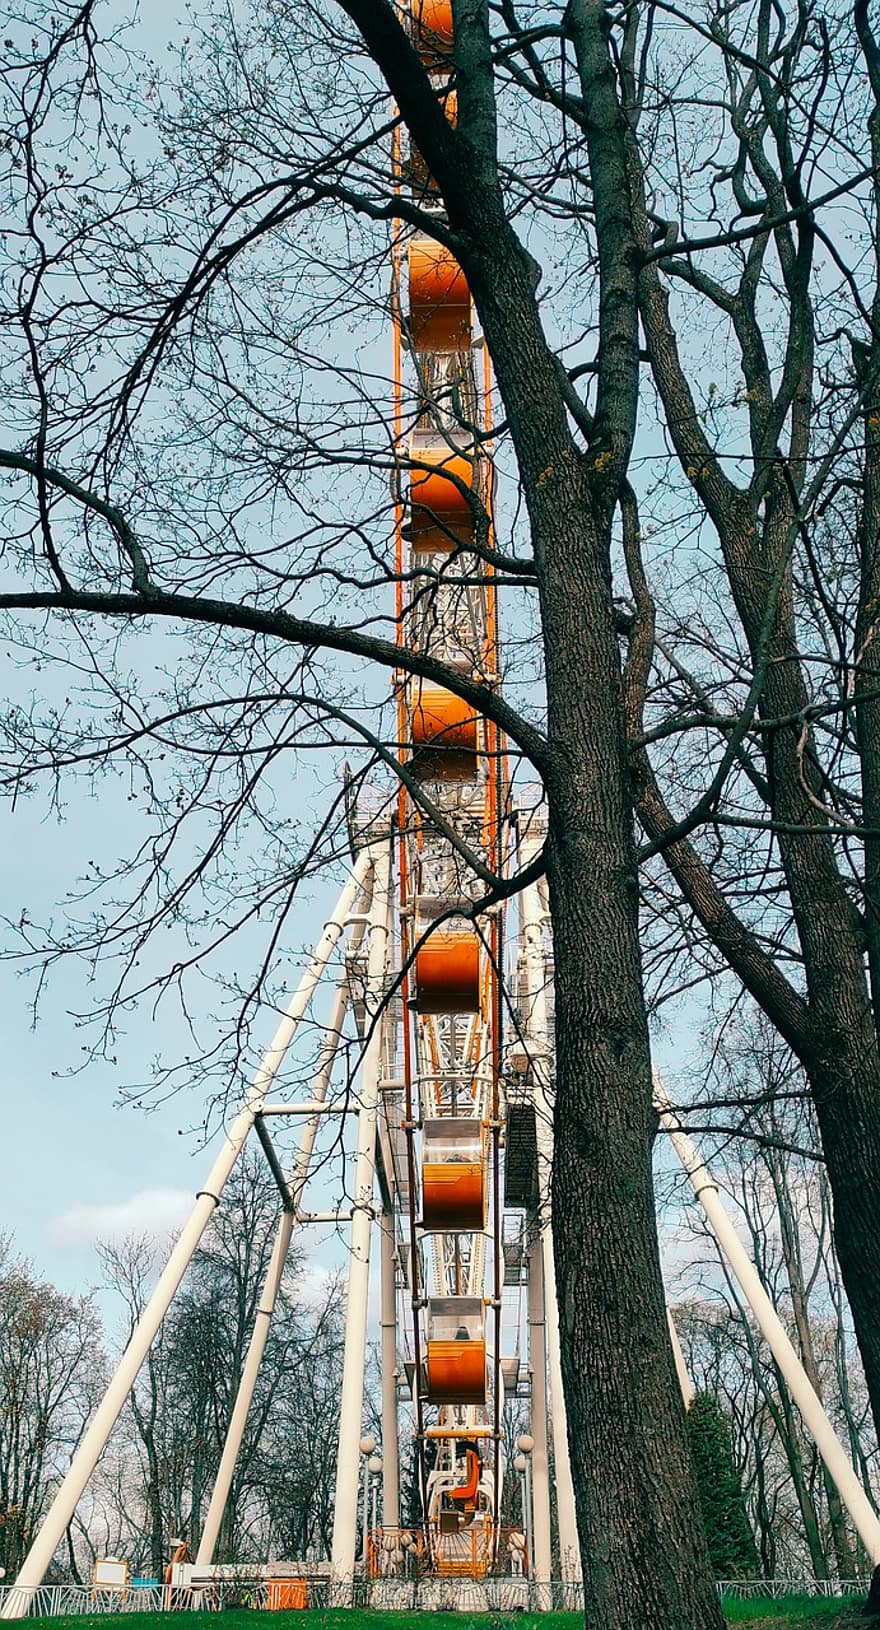 roda gigante, Parque temático, Parque de diversões